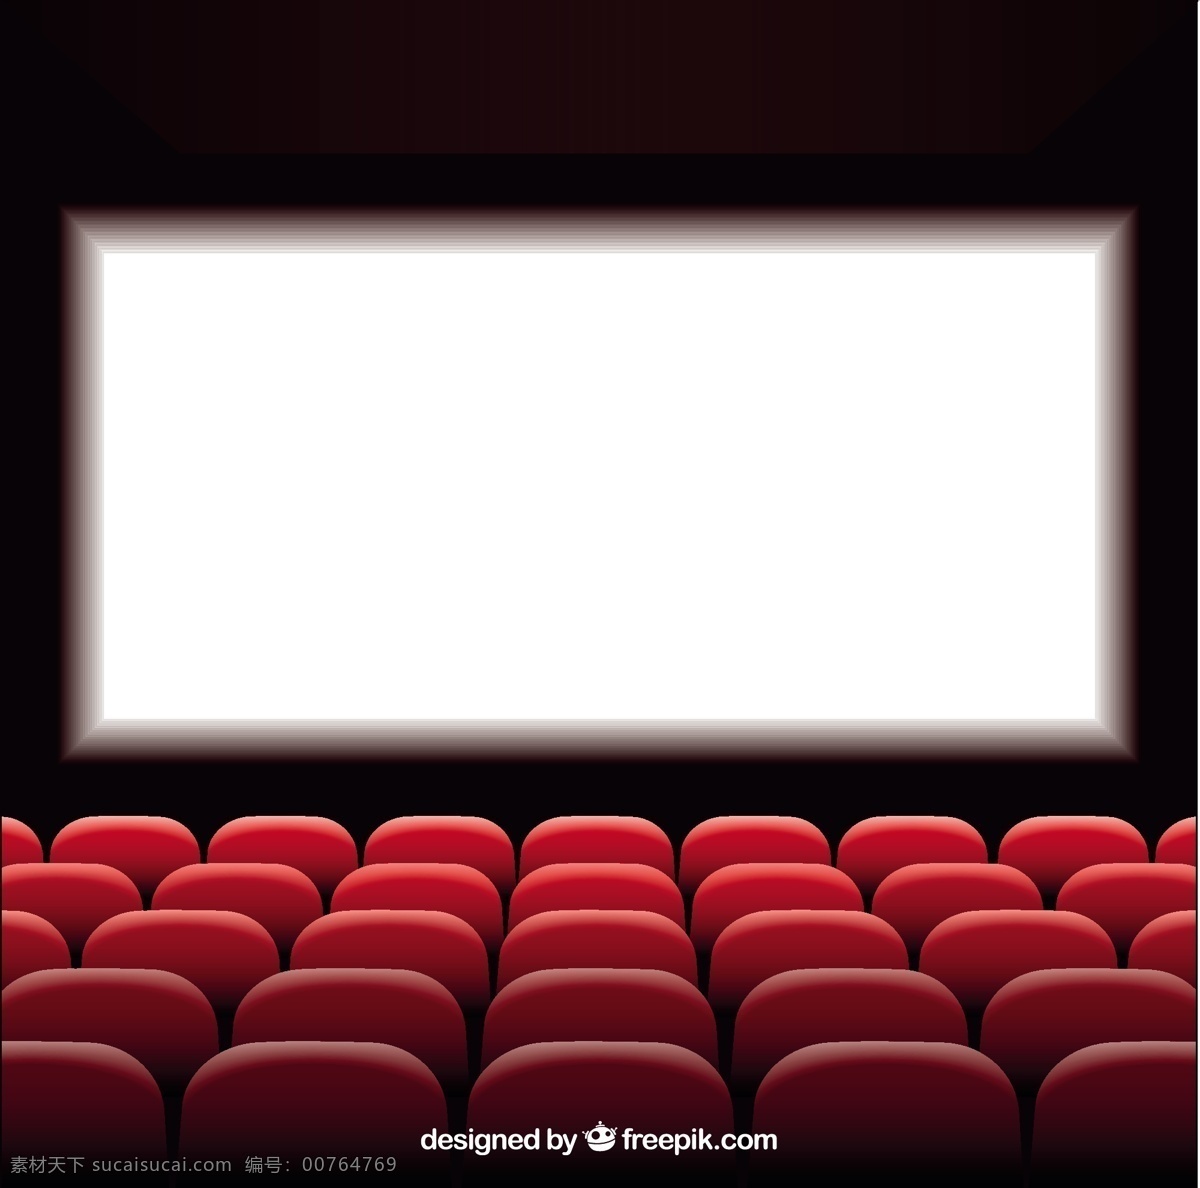 电影屏幕背景 影院 影片 红色 电影 戏剧 室内 显示 屏幕 座椅 礼堂座椅 投影 行执行